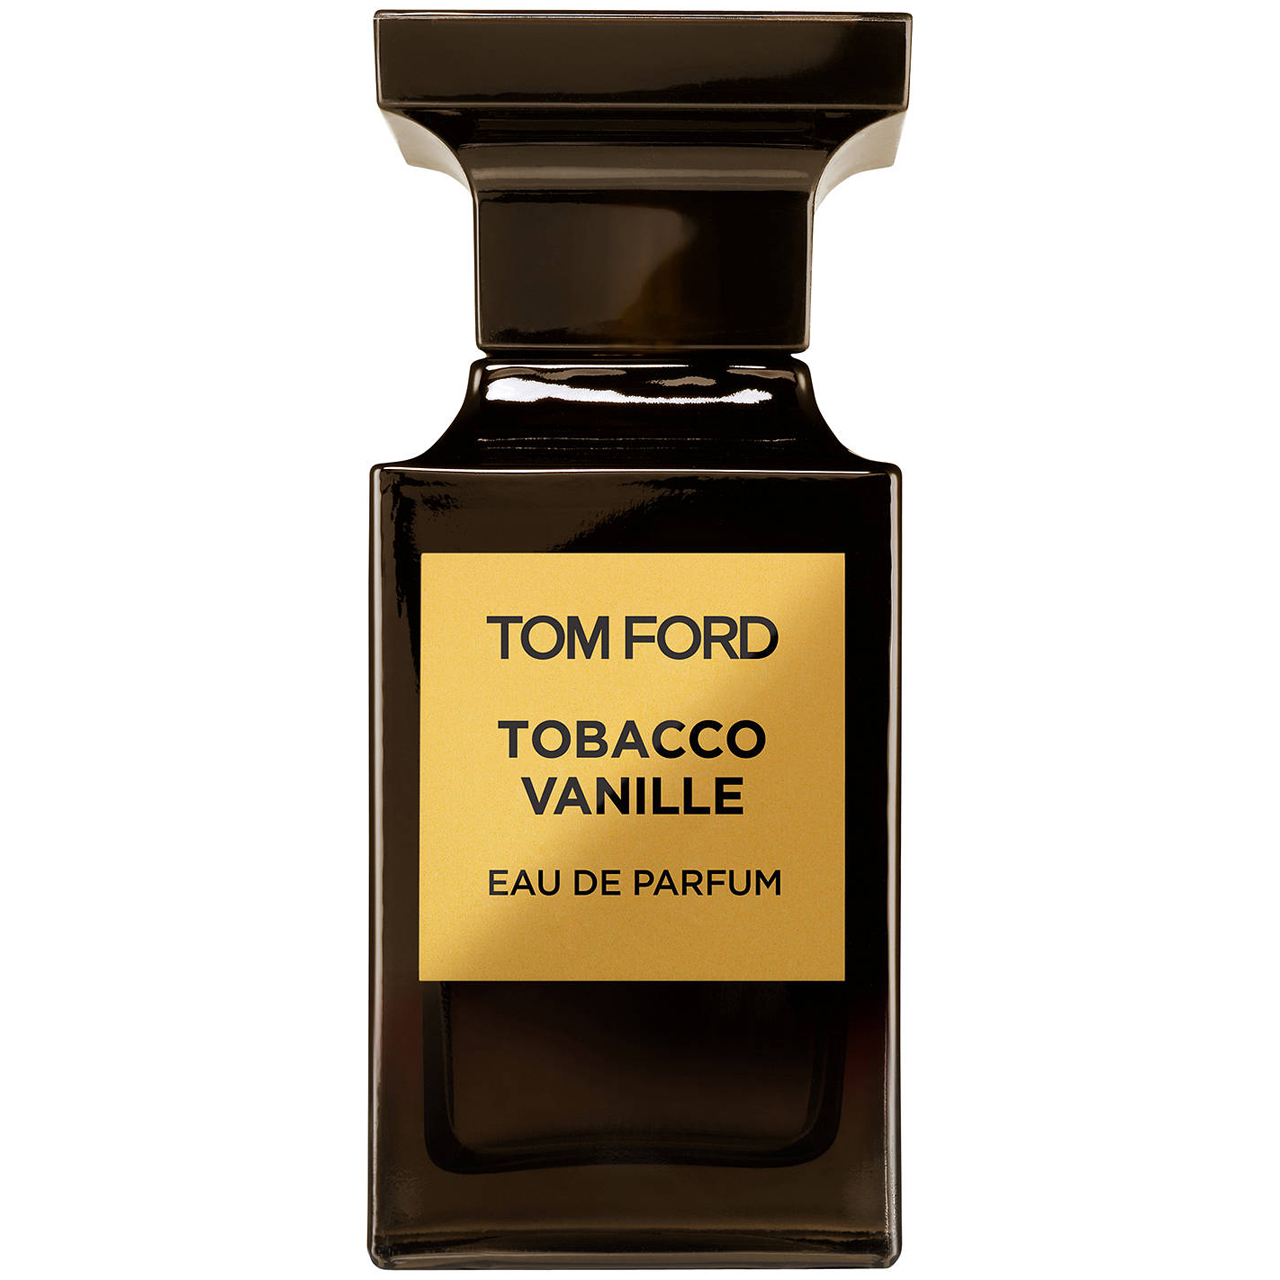 ادو پرفیوم تام فورد مدل Tobacco Vanille